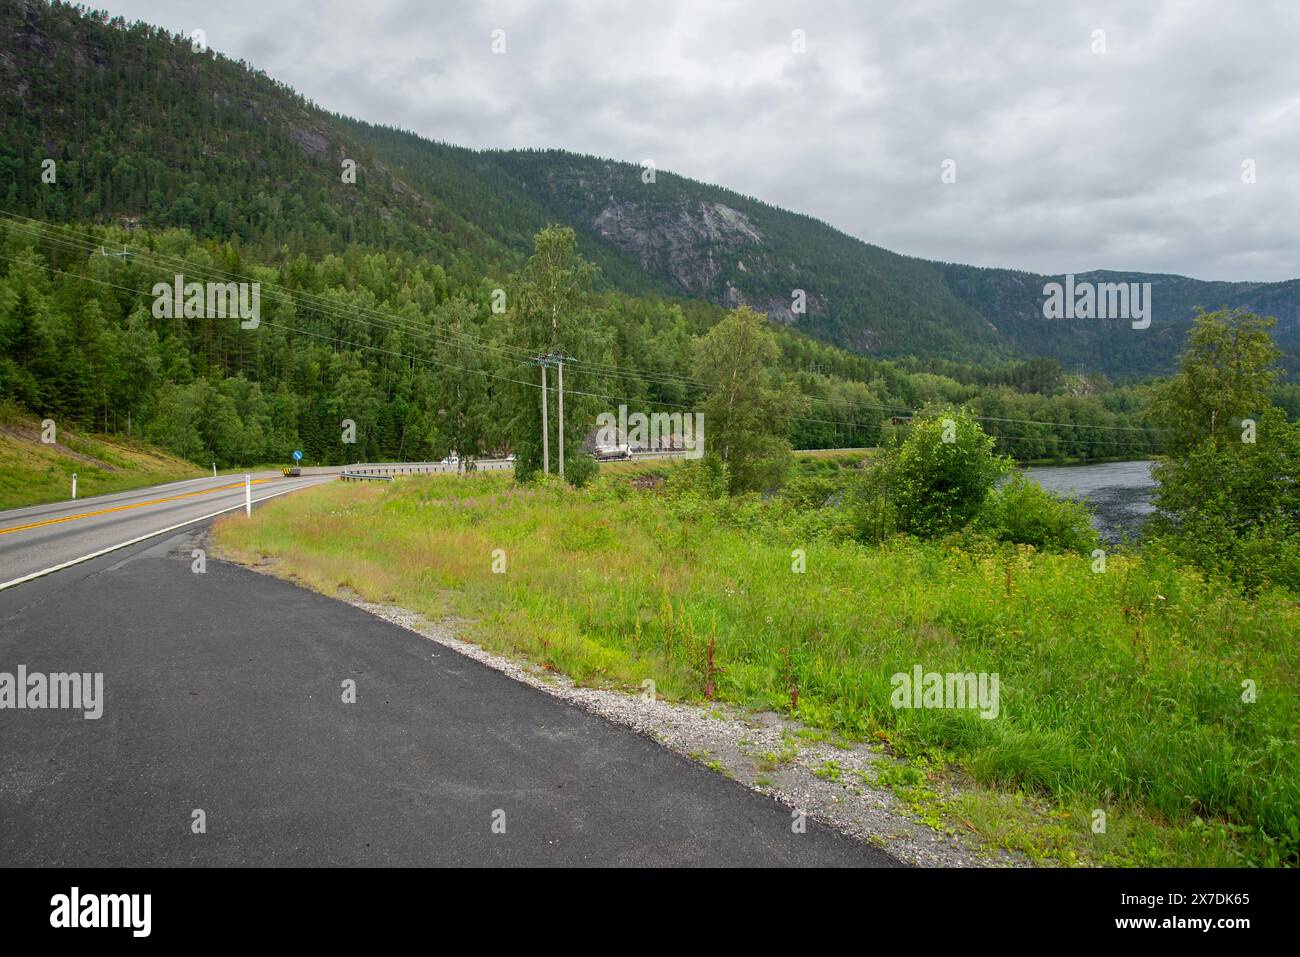 Norwegische Asphaltstraße neben einem Fluss mit grünem Gras am Ufer. Stockfoto